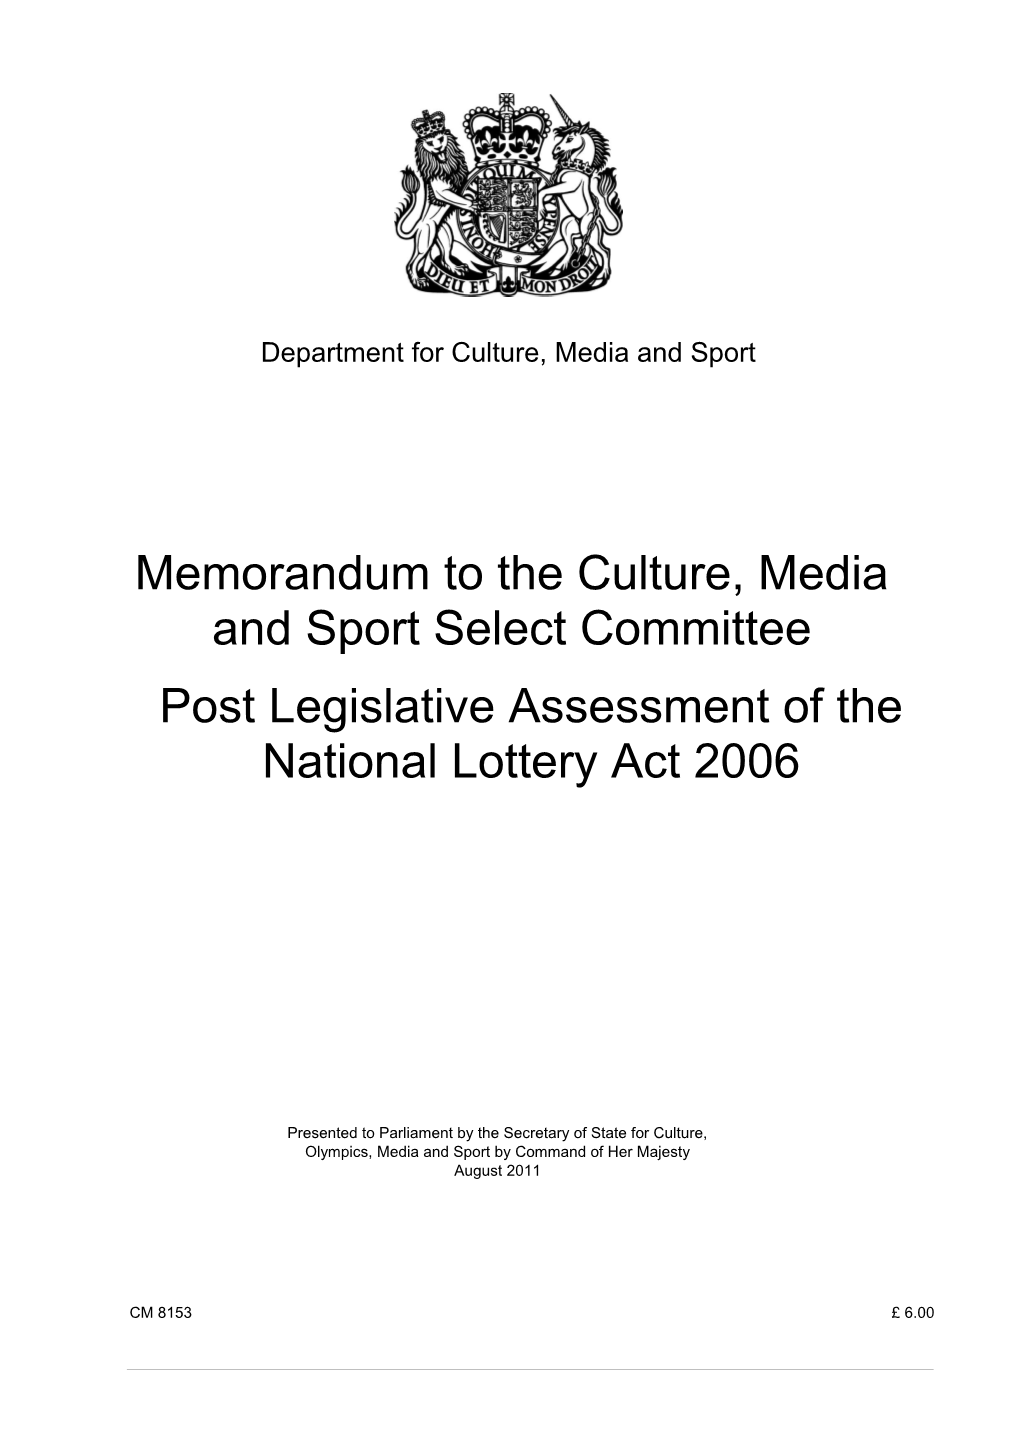 Memorandum to the Culture, Media and Sport Select Committee: Post Legislative Assessment